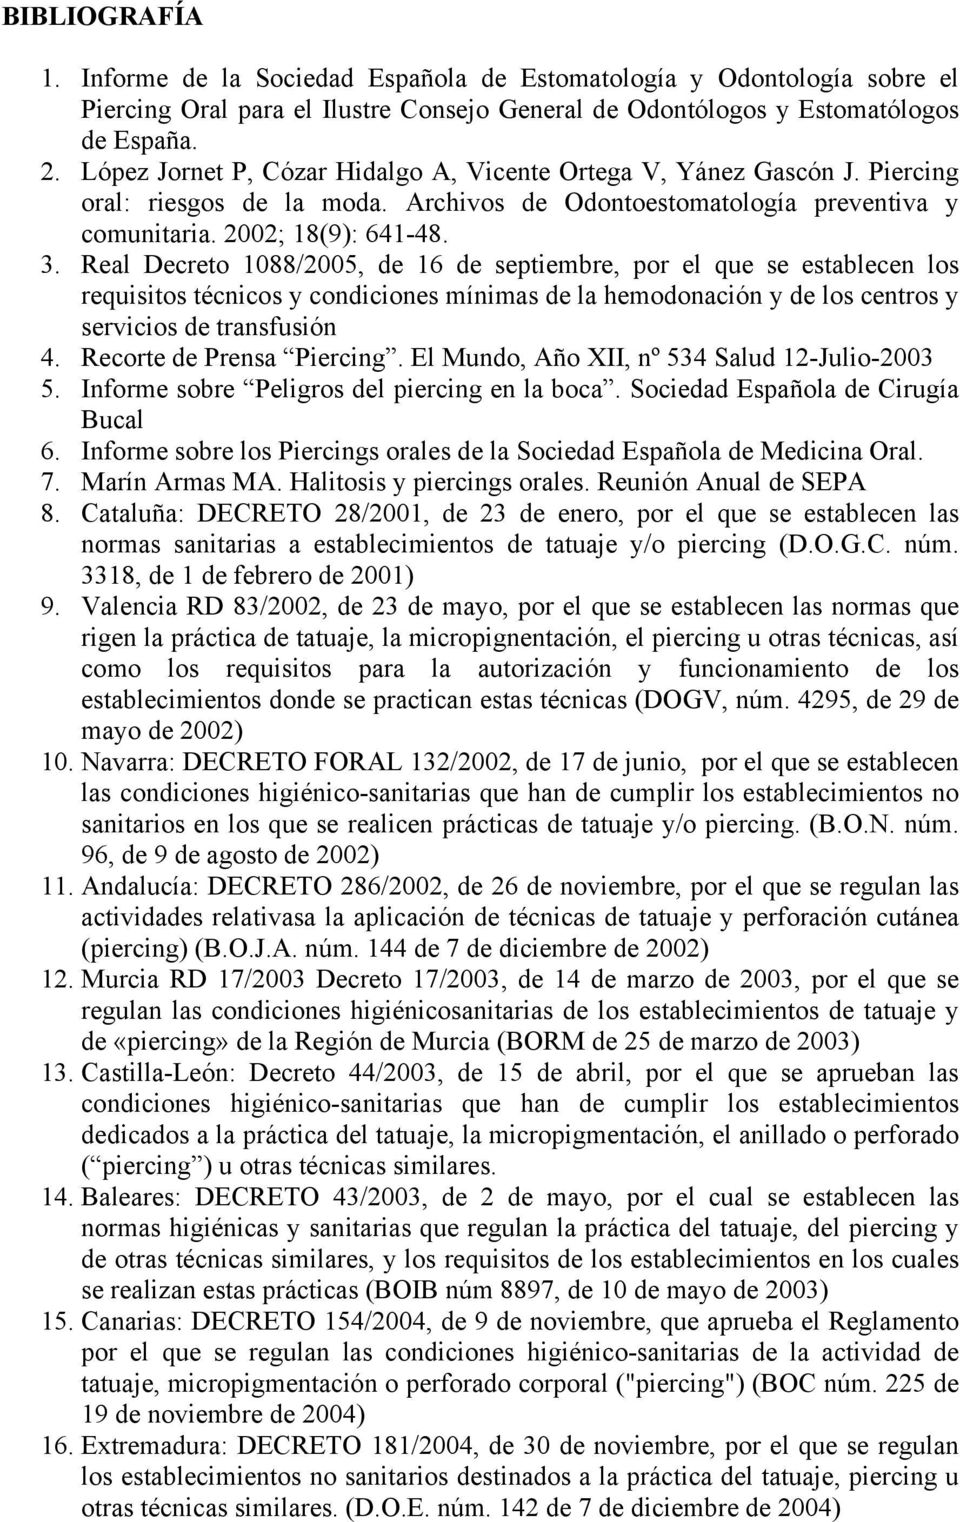 Real Decreto 1088/2005, de 16 de septiembre, por el que se establecen los requisitos técnicos y condiciones mínimas de la hemodonación y de los centros y servicios de transfusión 4.